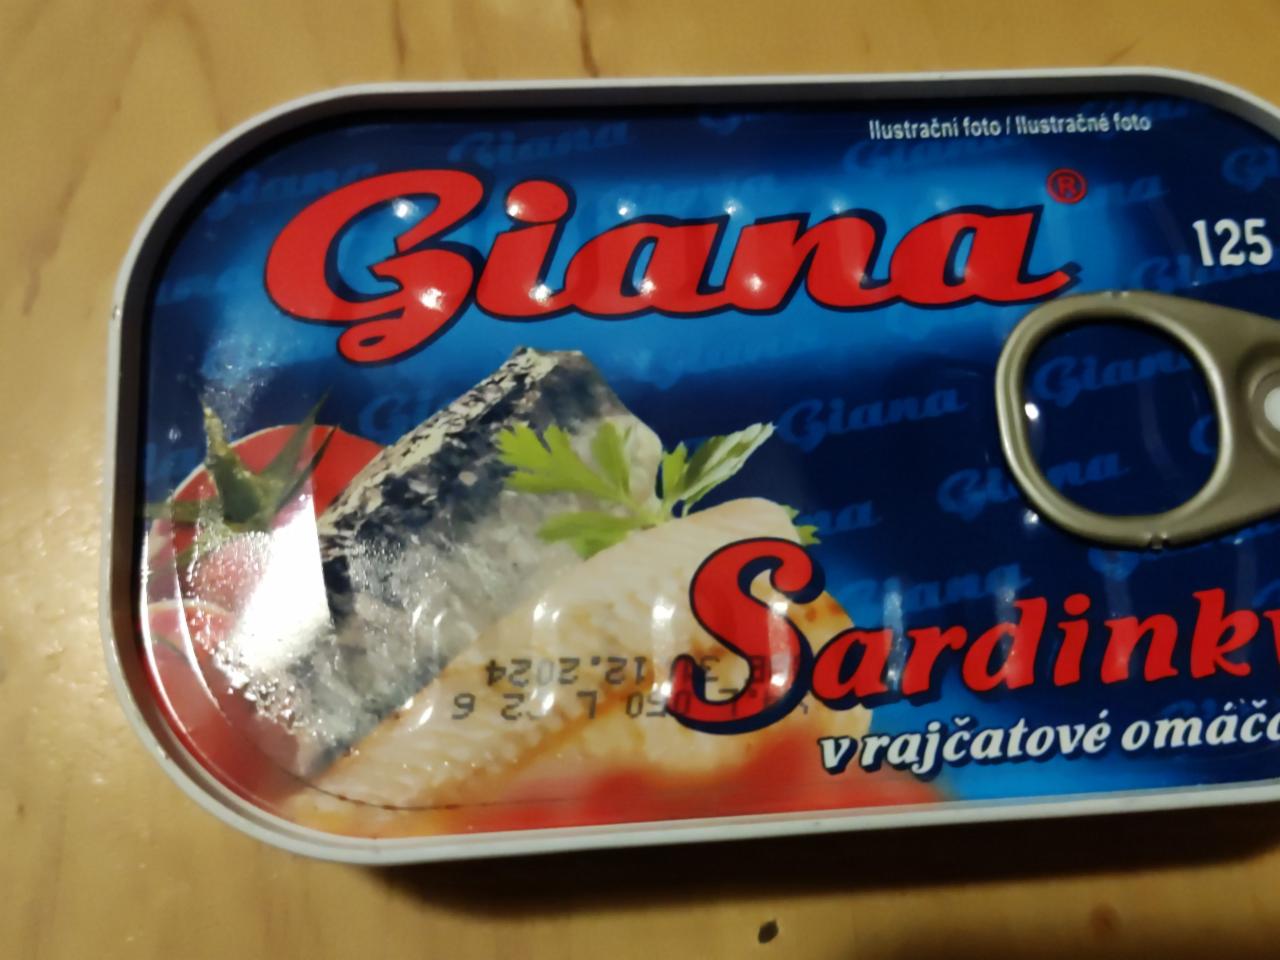 Fotografie - sardinky v tomatové omáčce Giana